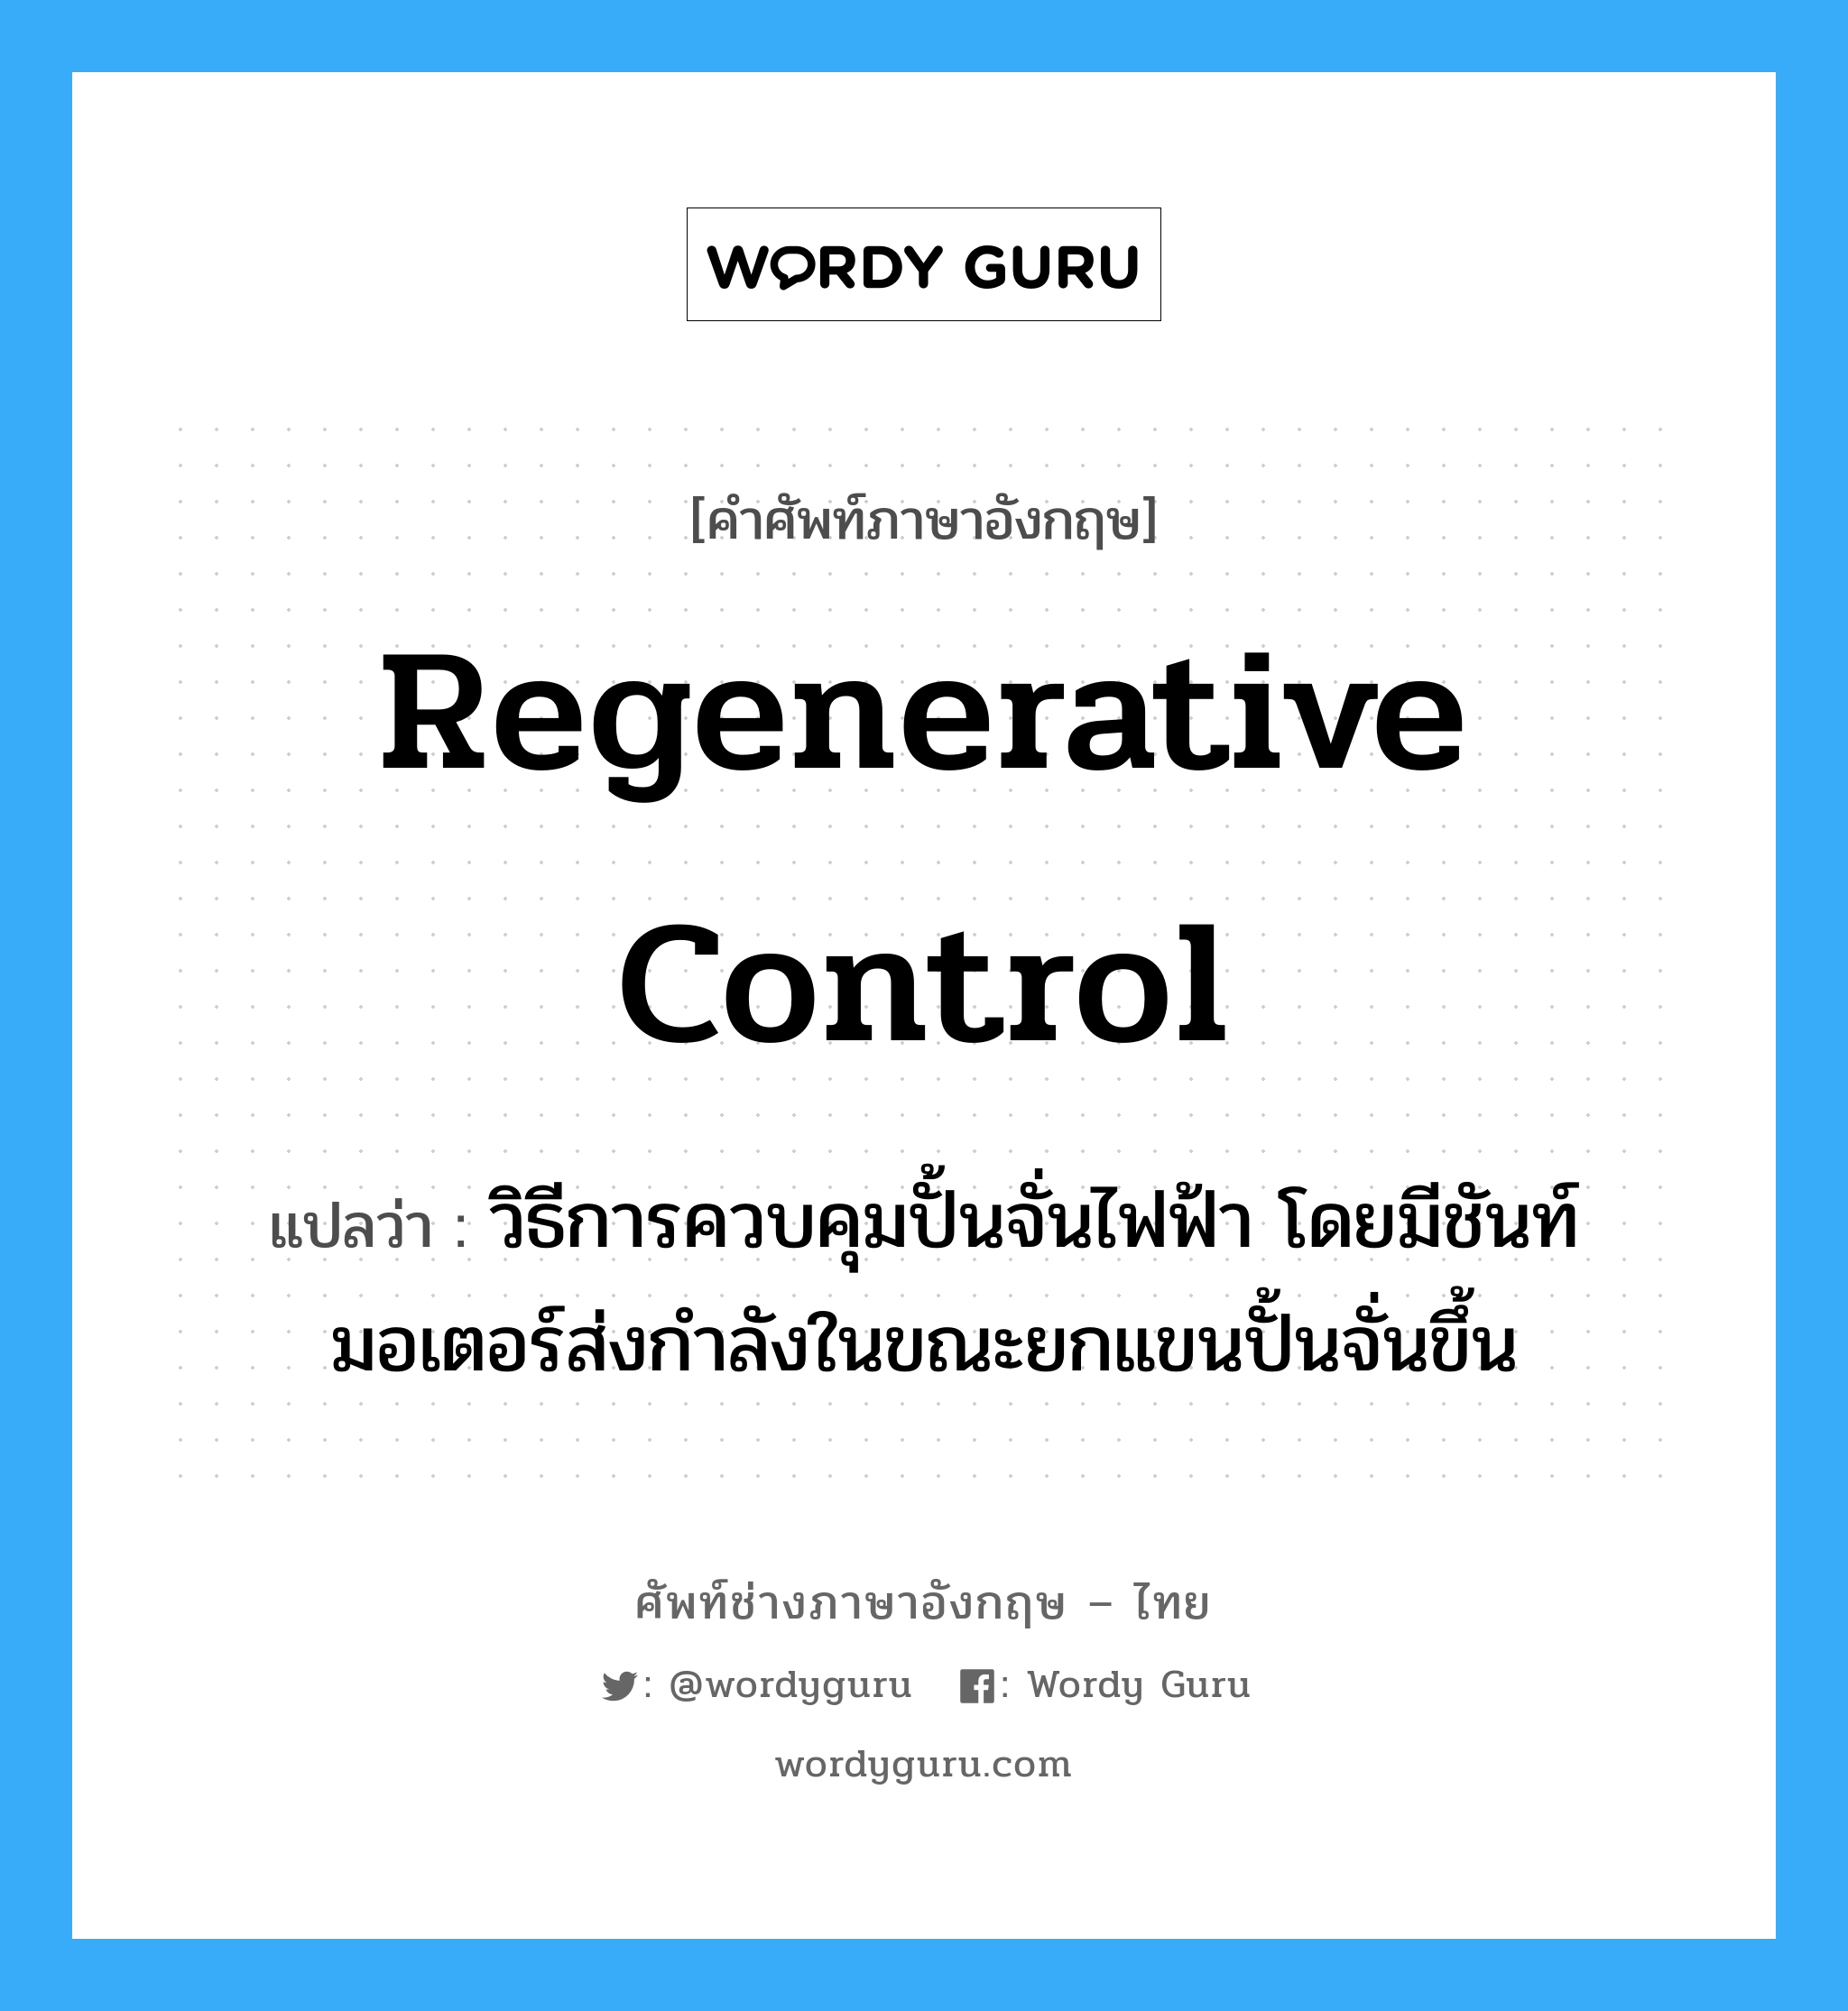 regenerative control แปลว่า?, คำศัพท์ช่างภาษาอังกฤษ - ไทย regenerative control คำศัพท์ภาษาอังกฤษ regenerative control แปลว่า วิธีการควบคุมปั้นจั่นไฟฟ้า โดยมีชันท์มอเตอร์ส่งกำลังในขณะยกแขนปั้นจั่นขึ้น